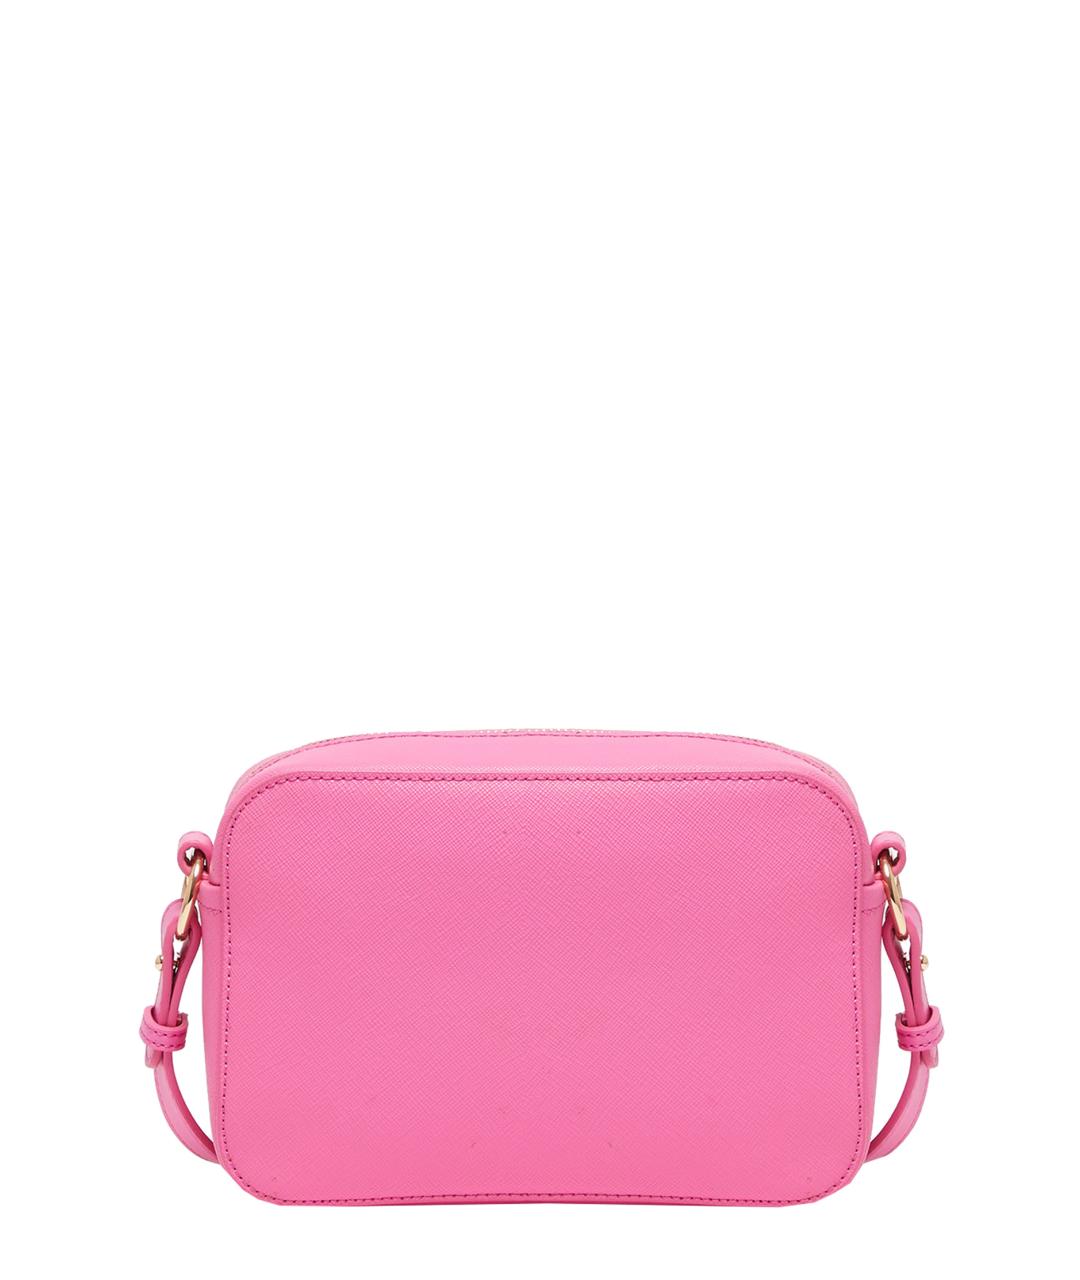 LIU JO Розовая сумка через плечо из искусственной кожи, фото 2